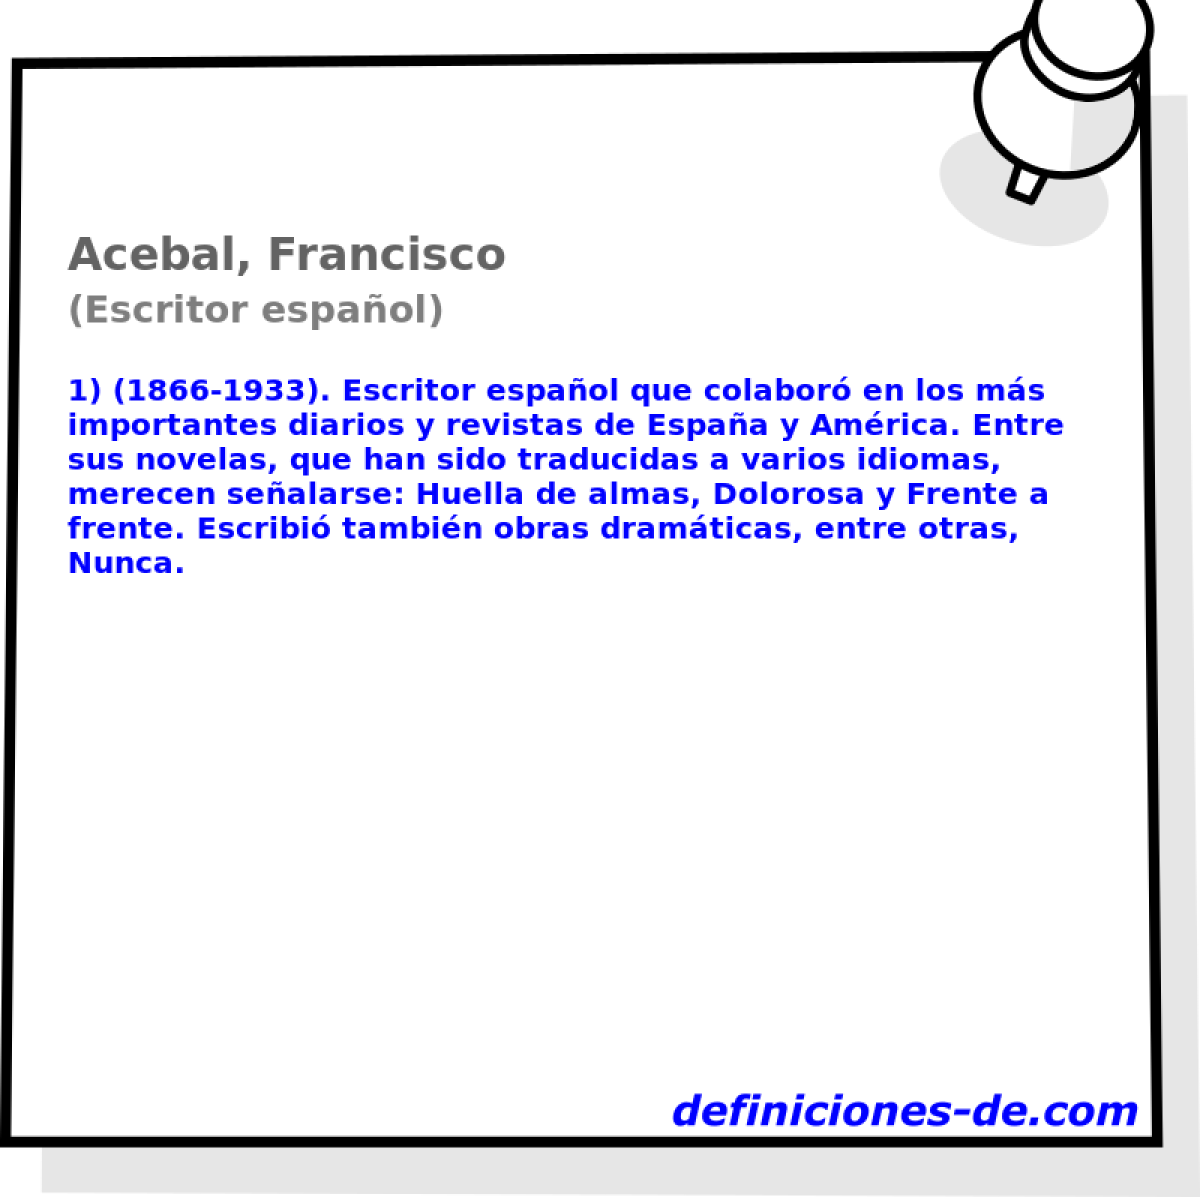 Acebal, Francisco (Escritor espaol)